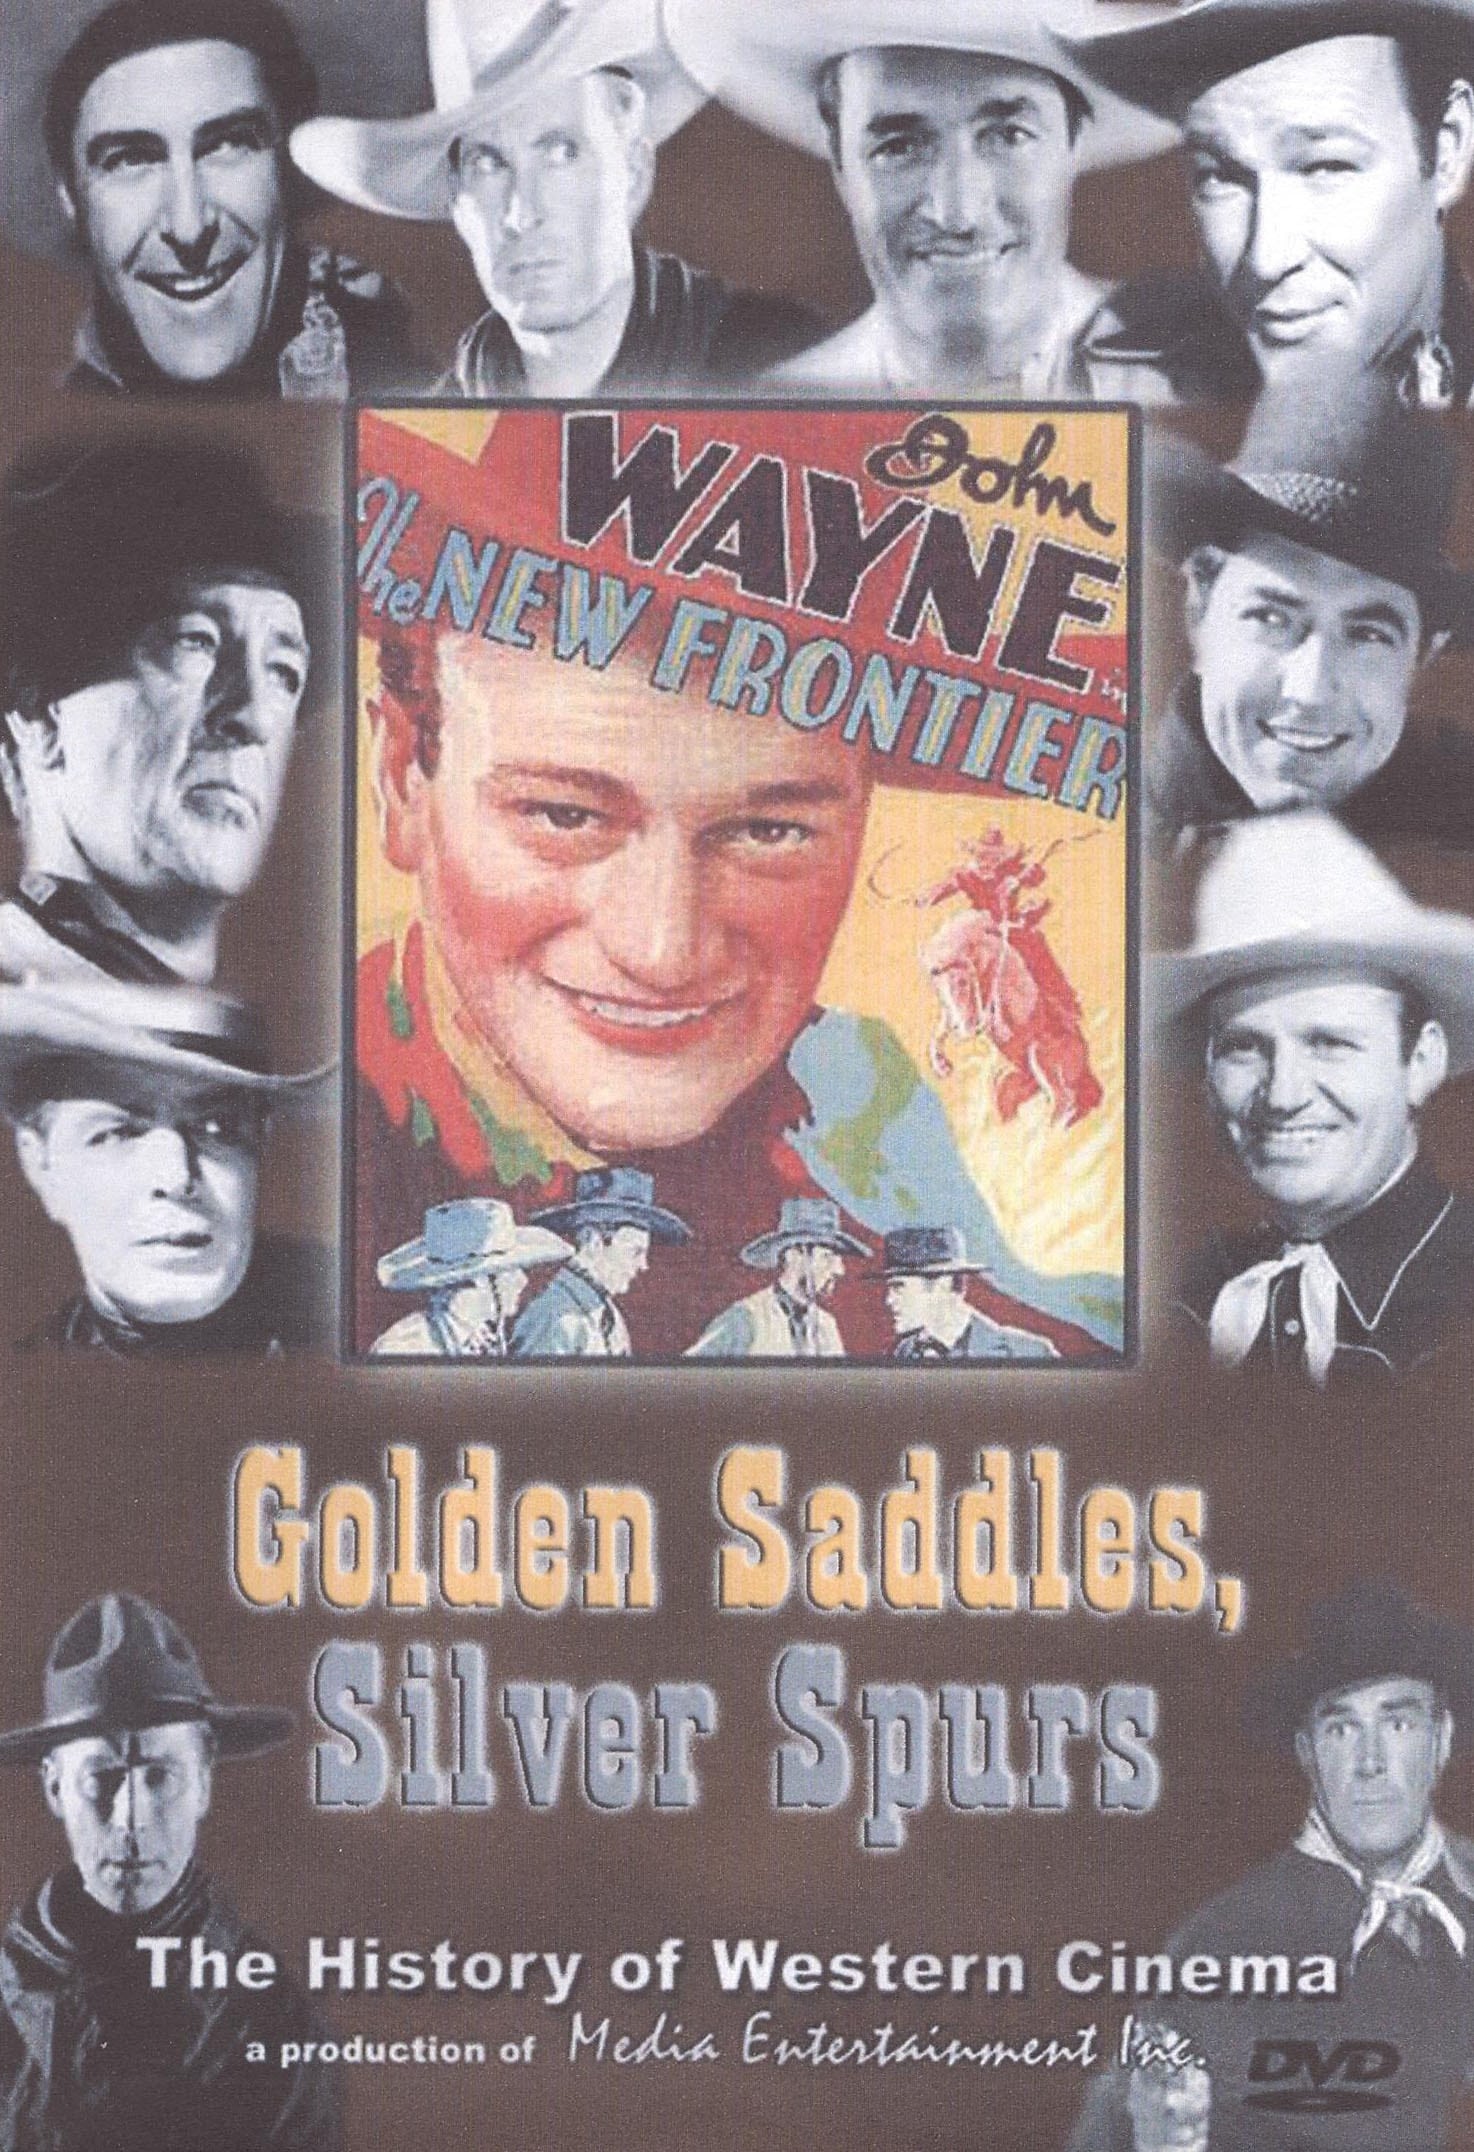 Golden Saddles, Silver Spurs